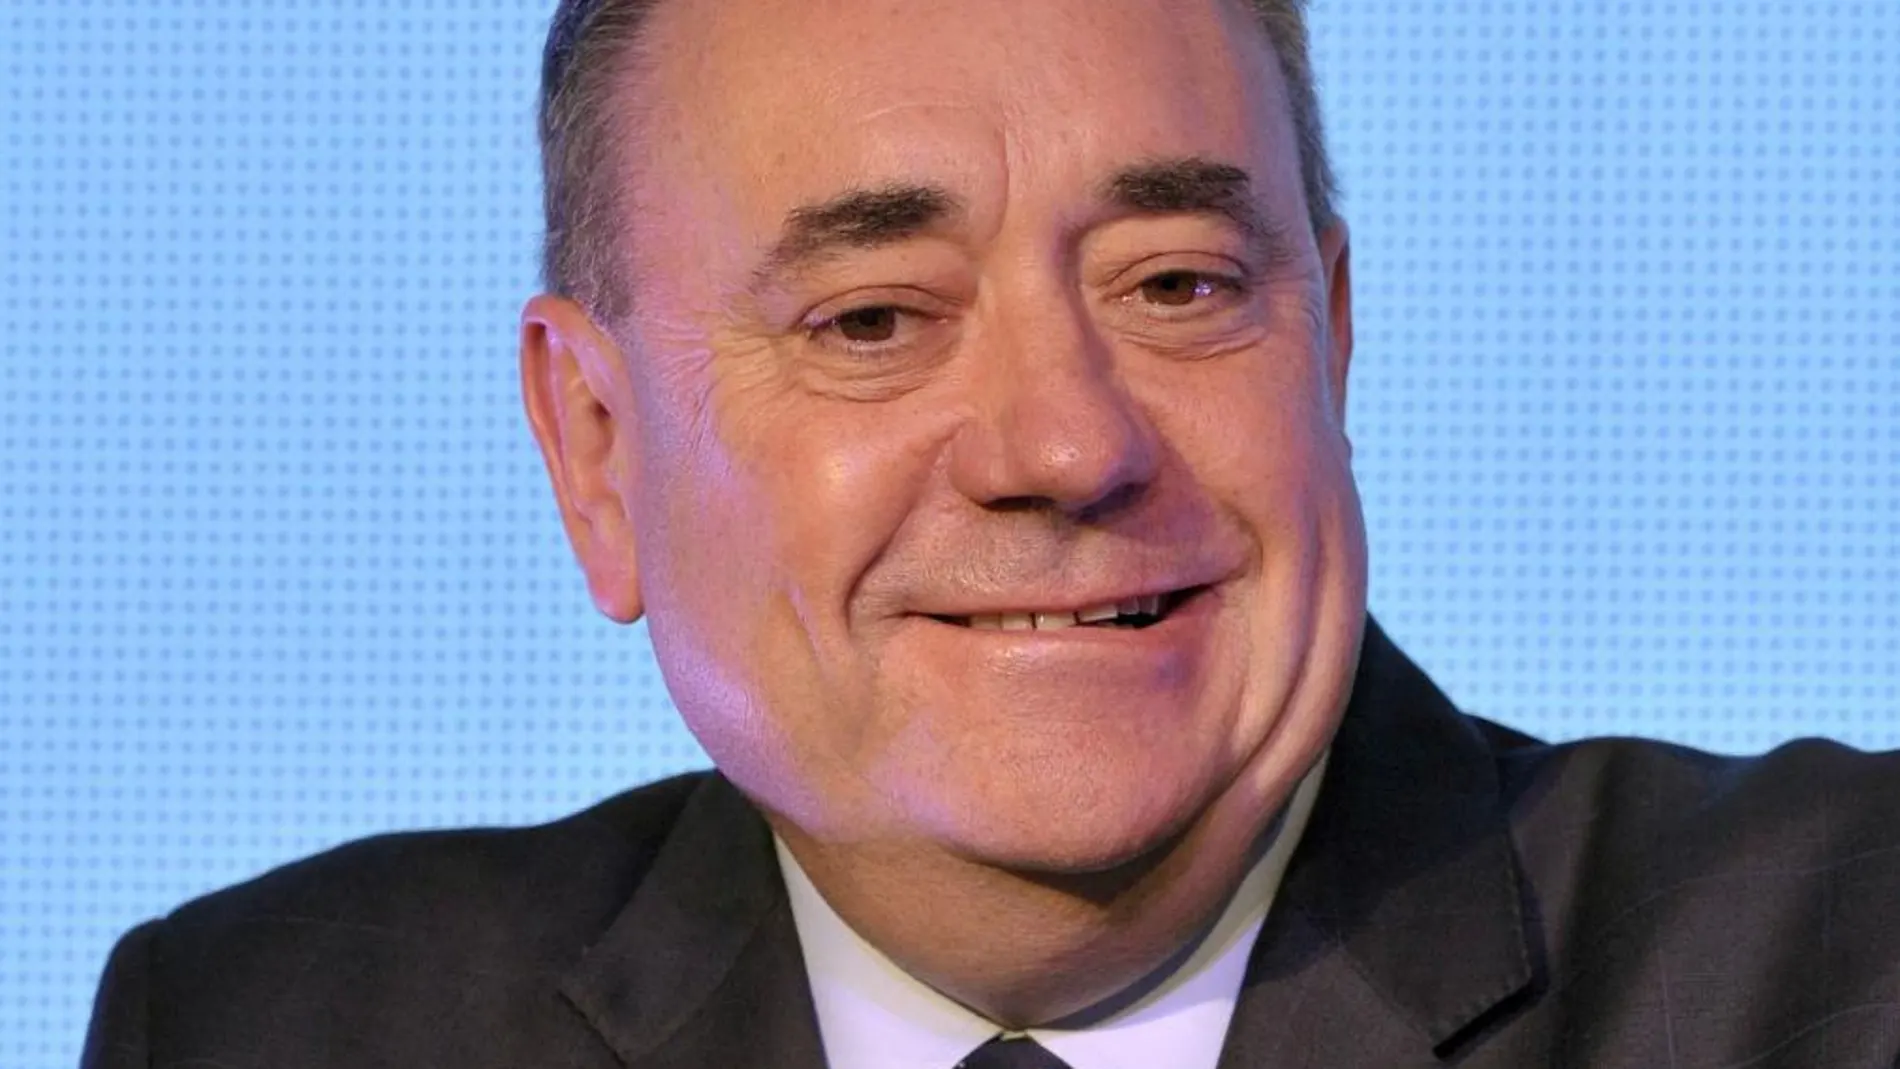 El tozudo y sonriente político escocés